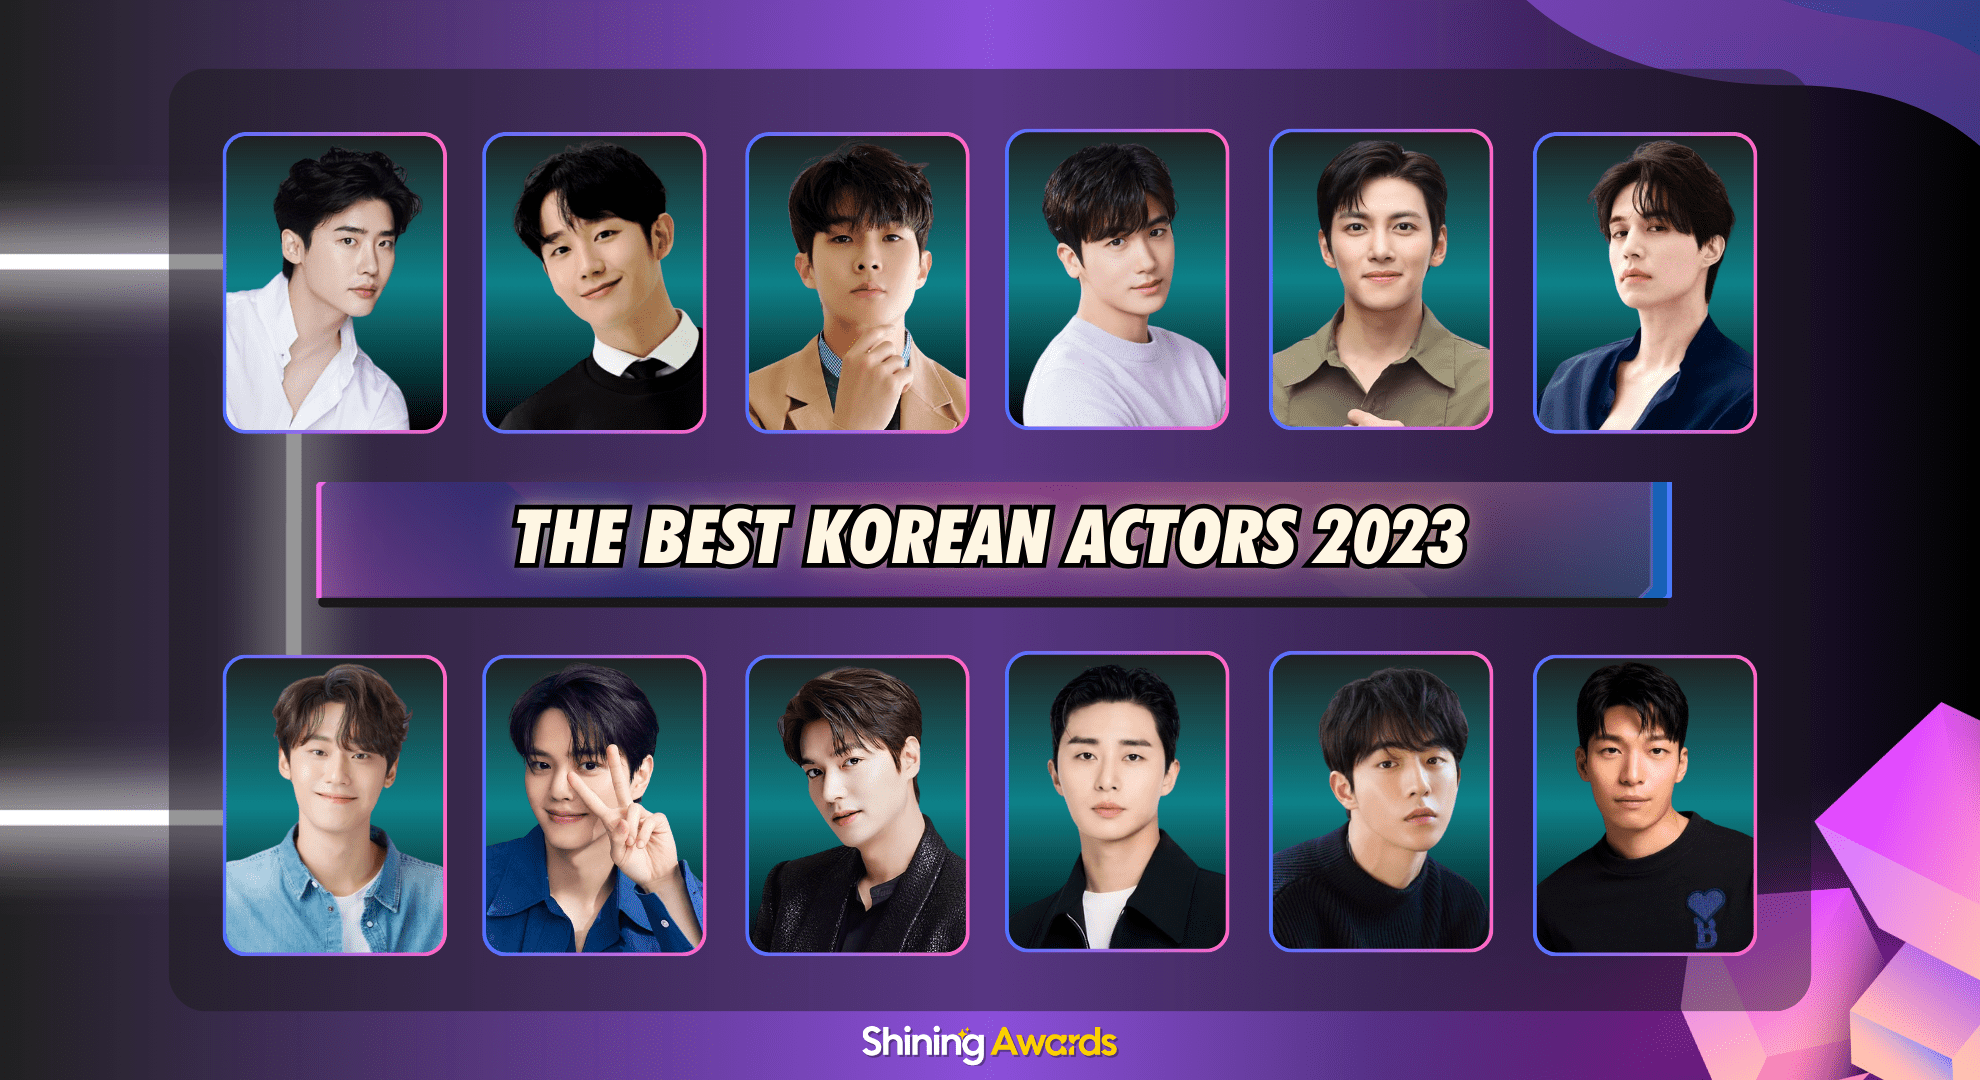 The Best Korean Actors 2023